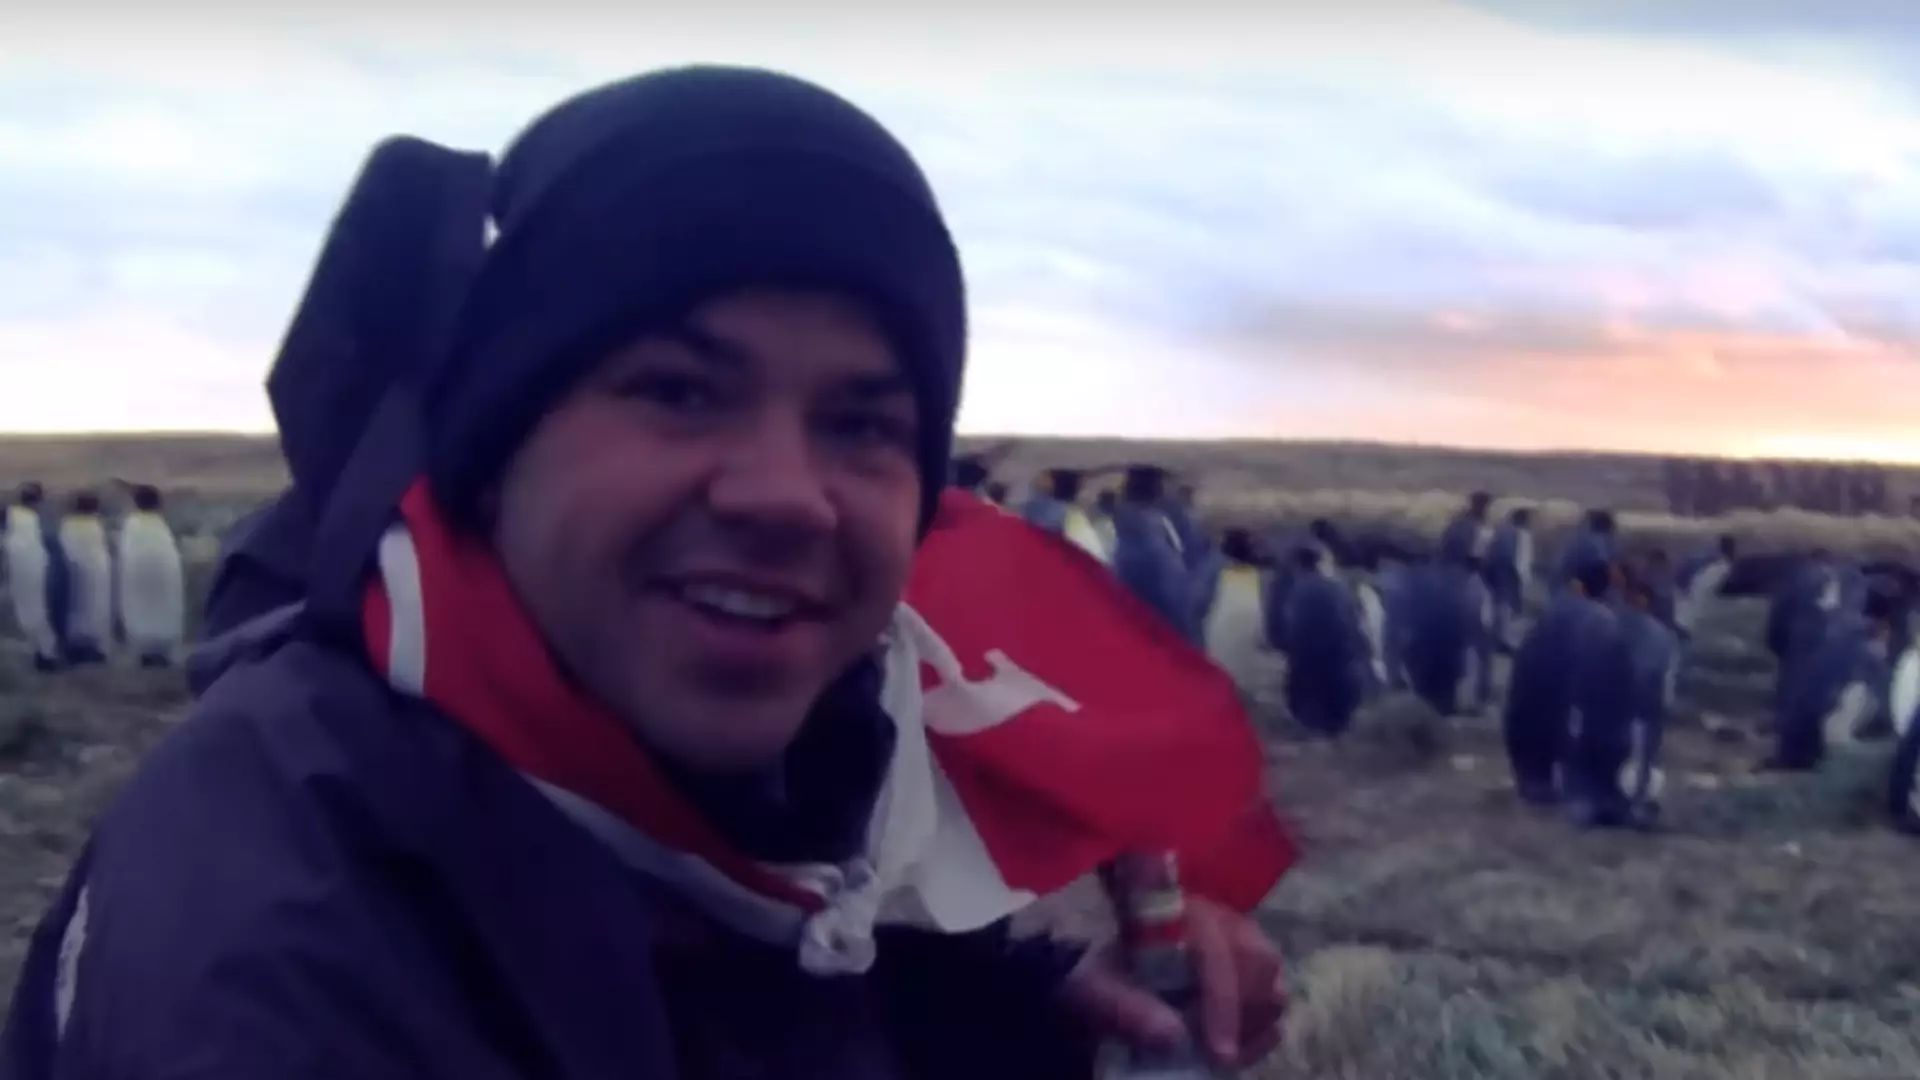 Polak autostopem dotarł do Chile, gdzie napił się wódki z pingwinami. Teraz rusza dalej i chce pokazać prawdę o uchodźcach